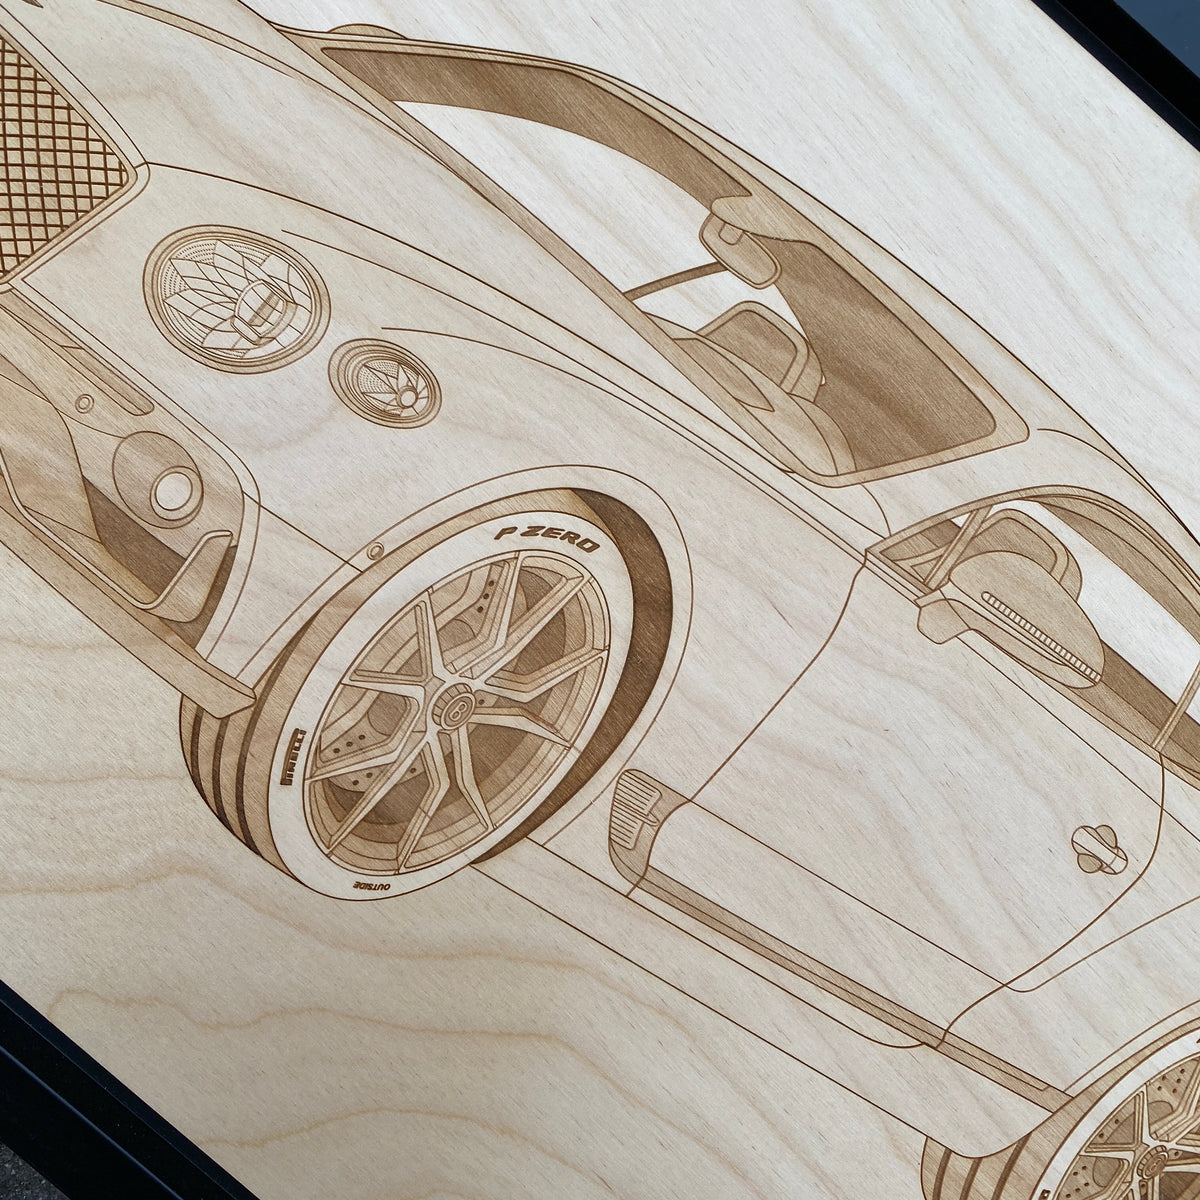 Bentley Continental GT 2020 Framed Wood Engraved Artwork